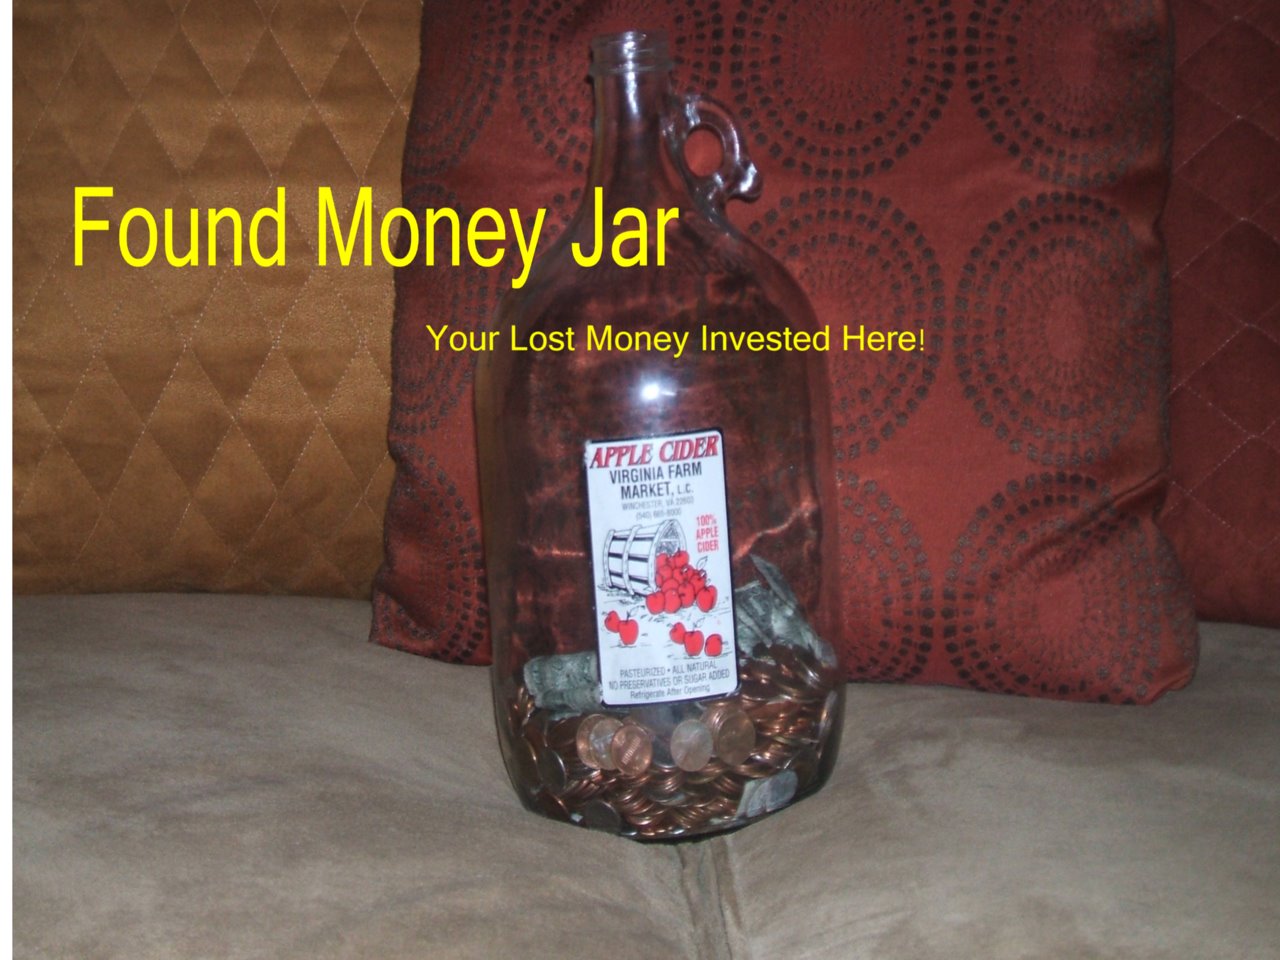 The Found Money Jar